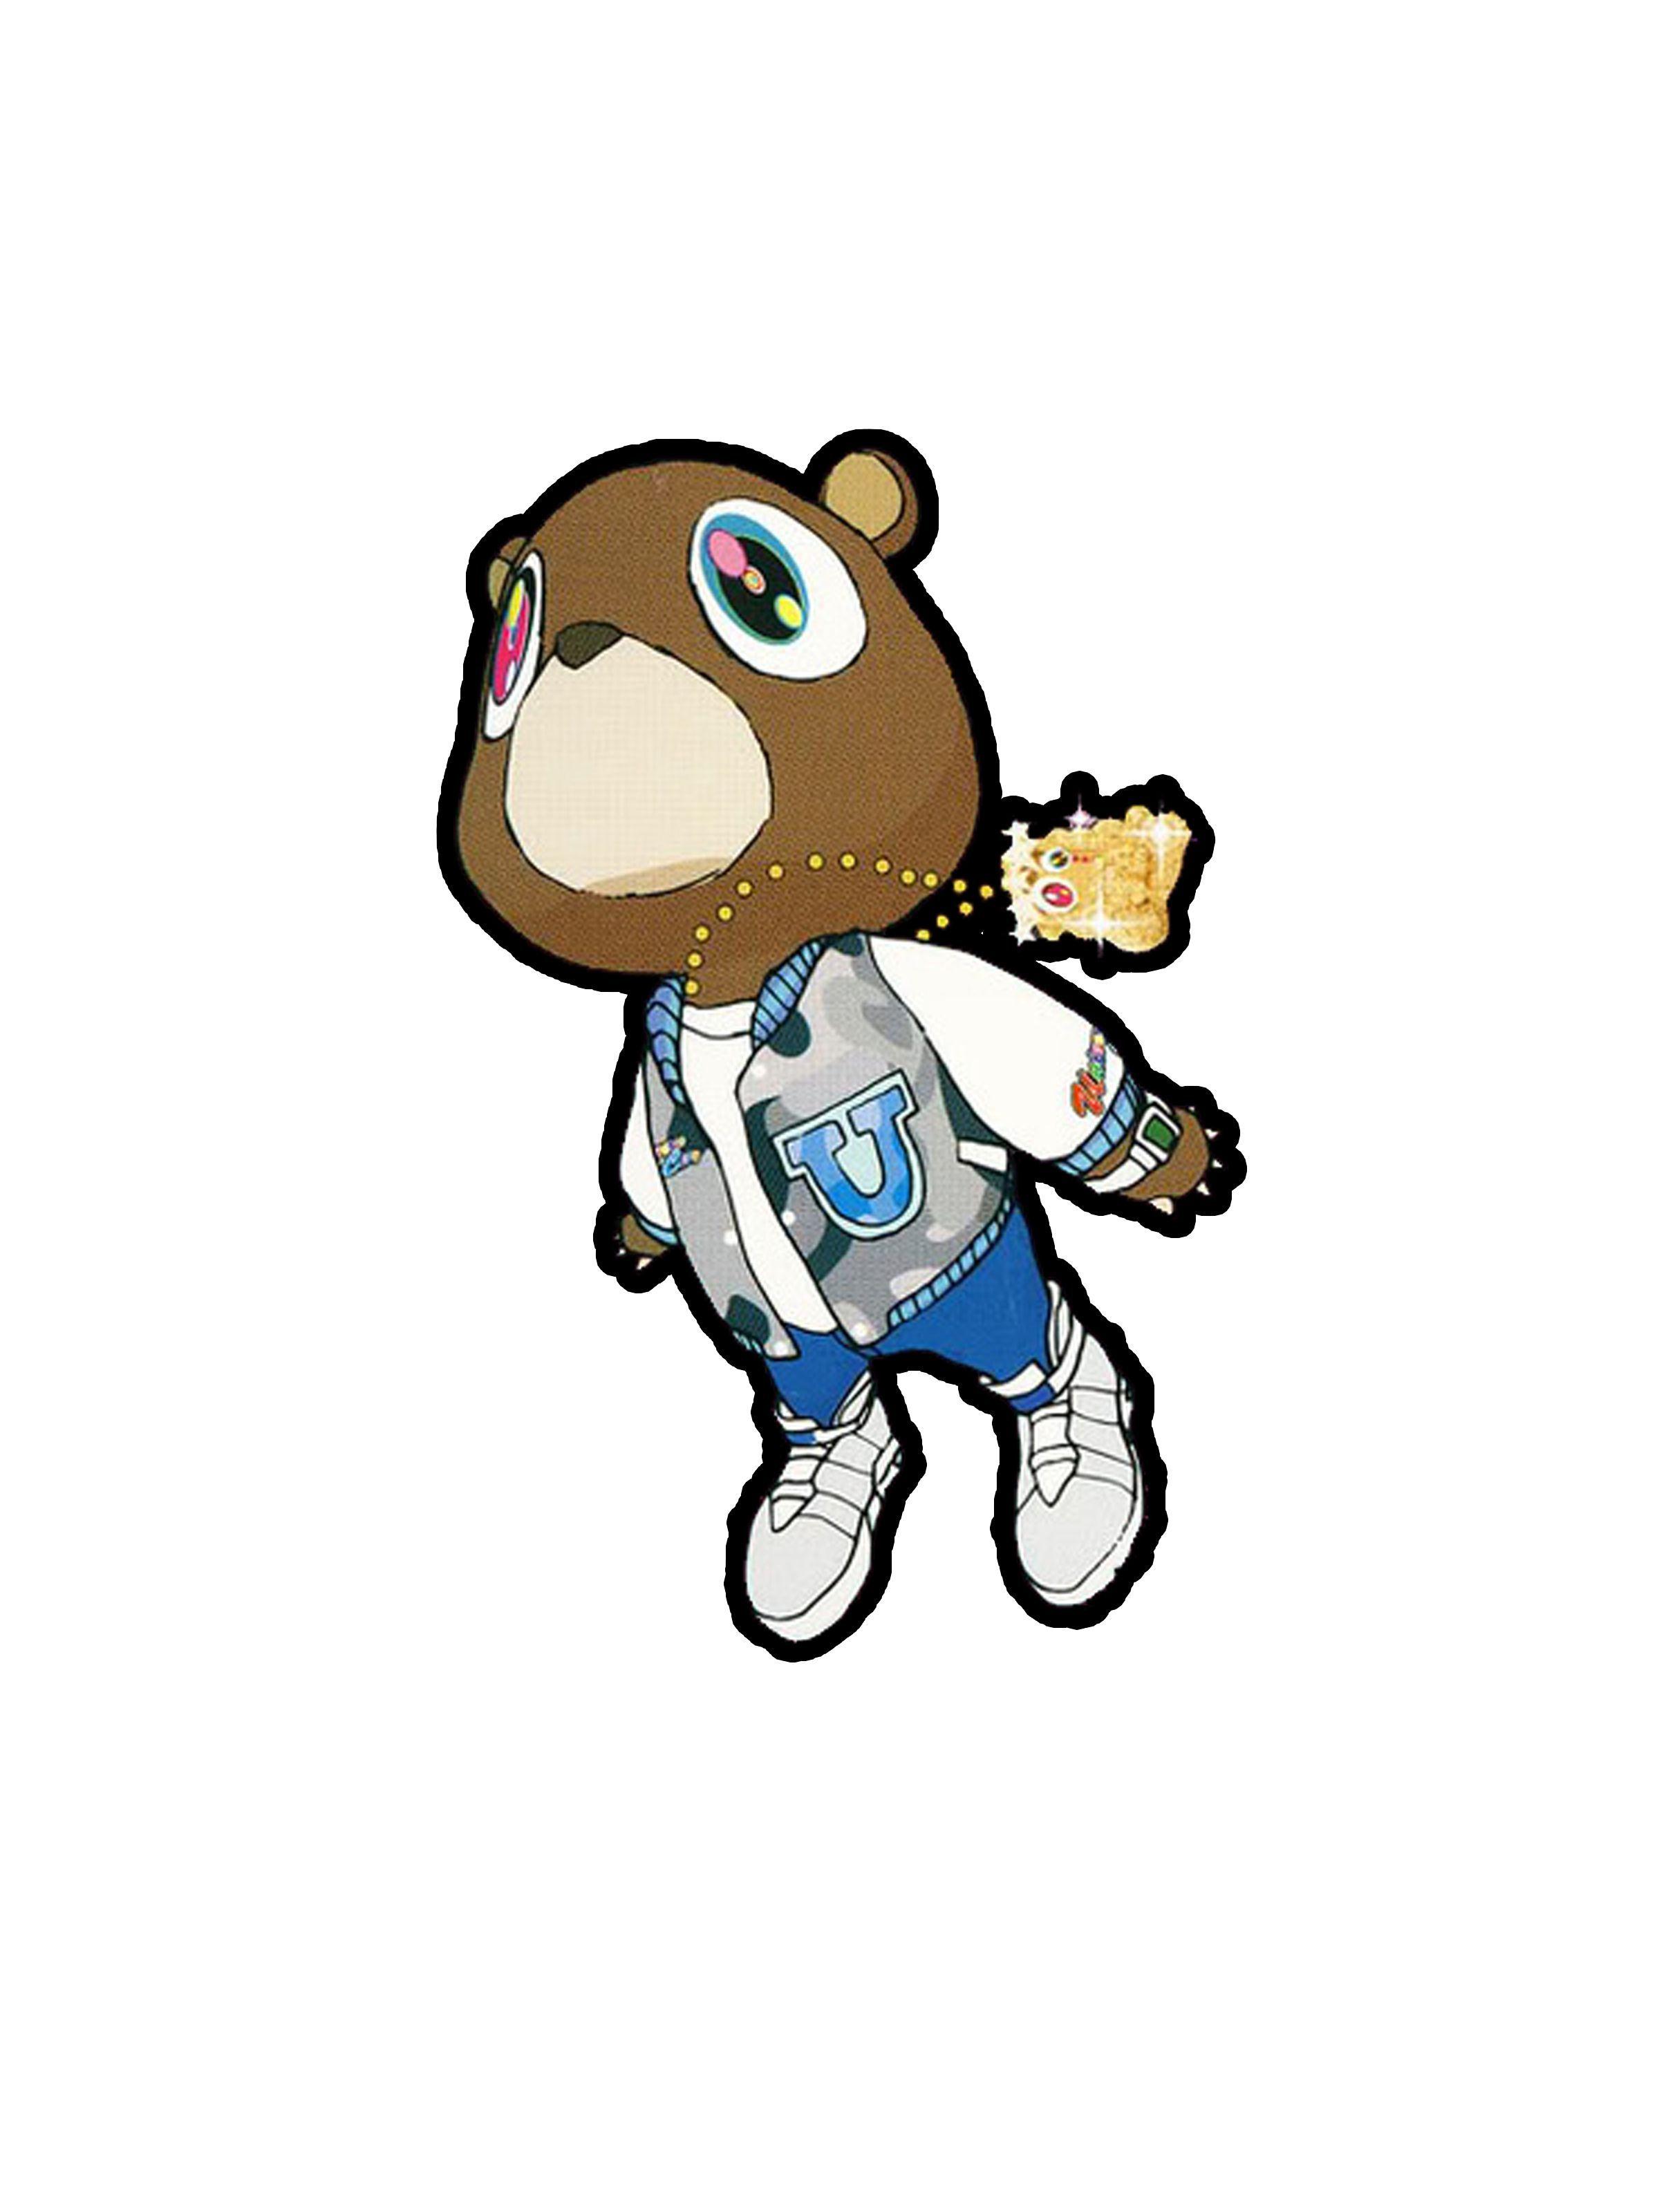 Yeezy Bear Logo - Kanye West Graduation Bear | inked skin in 2019 | Pinterest | Kanye ...